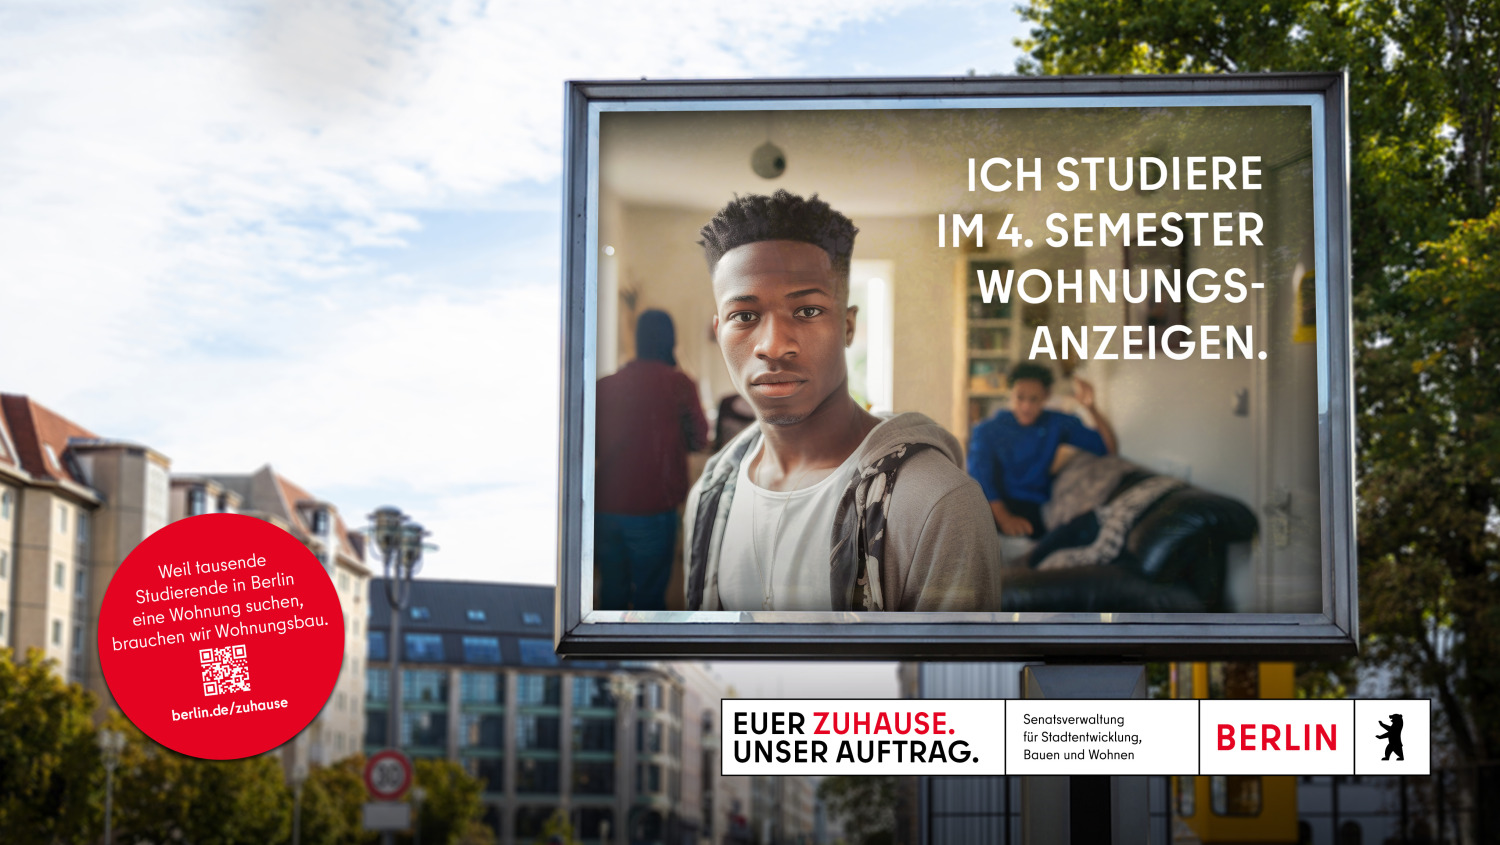 Auf einer Werbetafel in Berlin ist ein junger Mann abgebildet, der direkt in die Kamera blickt. Hinter ihm sind weitere Personen in einem Raum. Der Text auf der Tafel lautet: “ICH STUDIERE IM 4. SEMESTER WOHNUNGSANZEIGEN.” Im Hintergrund sieht man städtische Gebäude und Straßen.